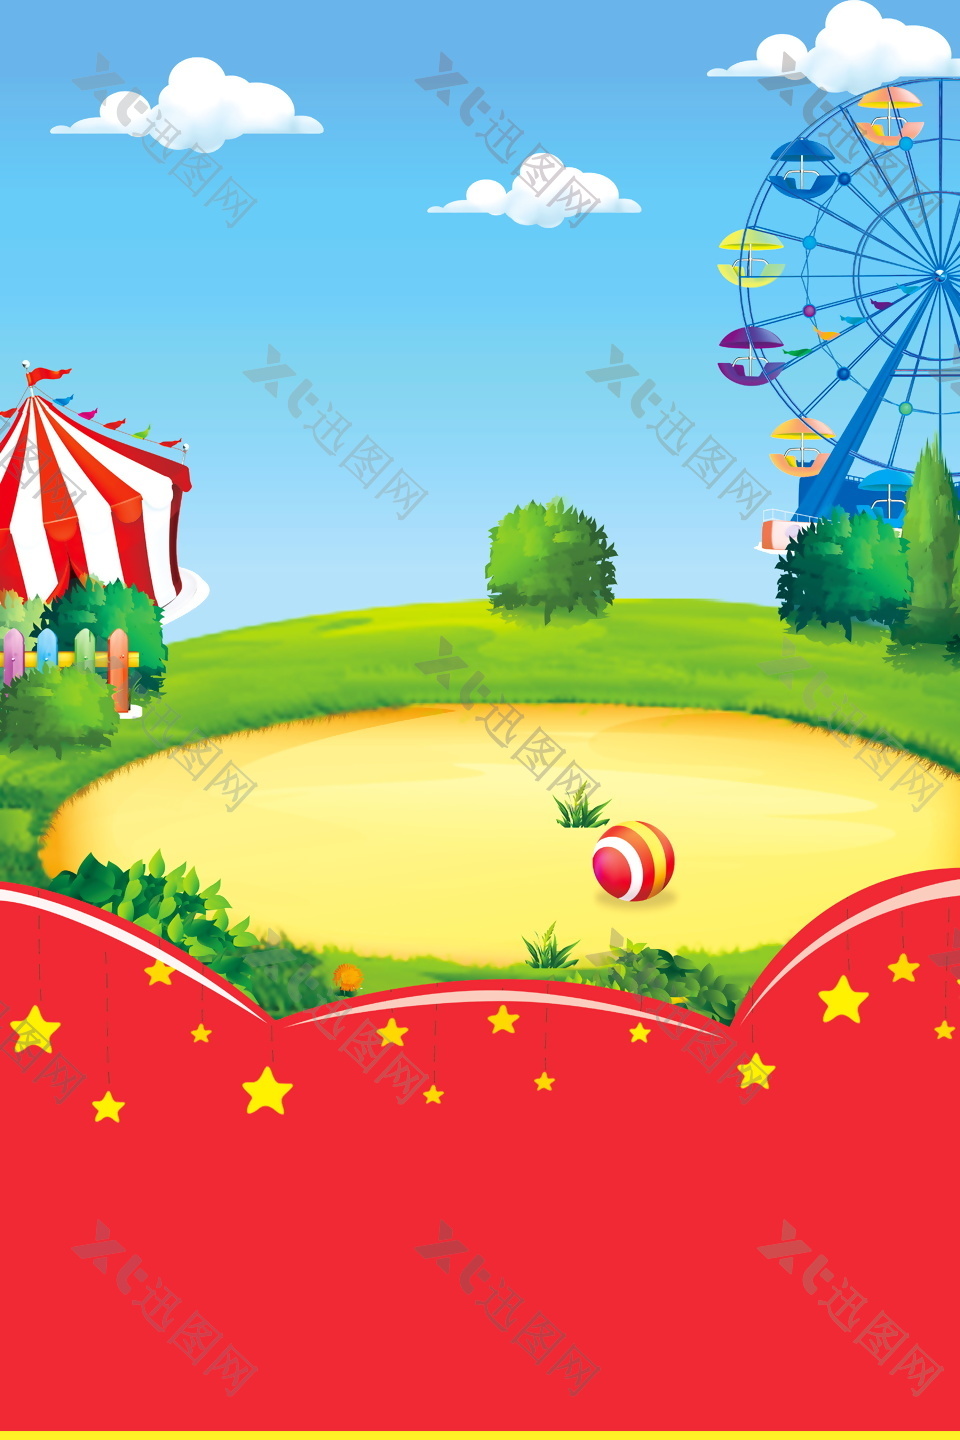 精美卡通六一儿童节红旗游乐园摩天轮背景